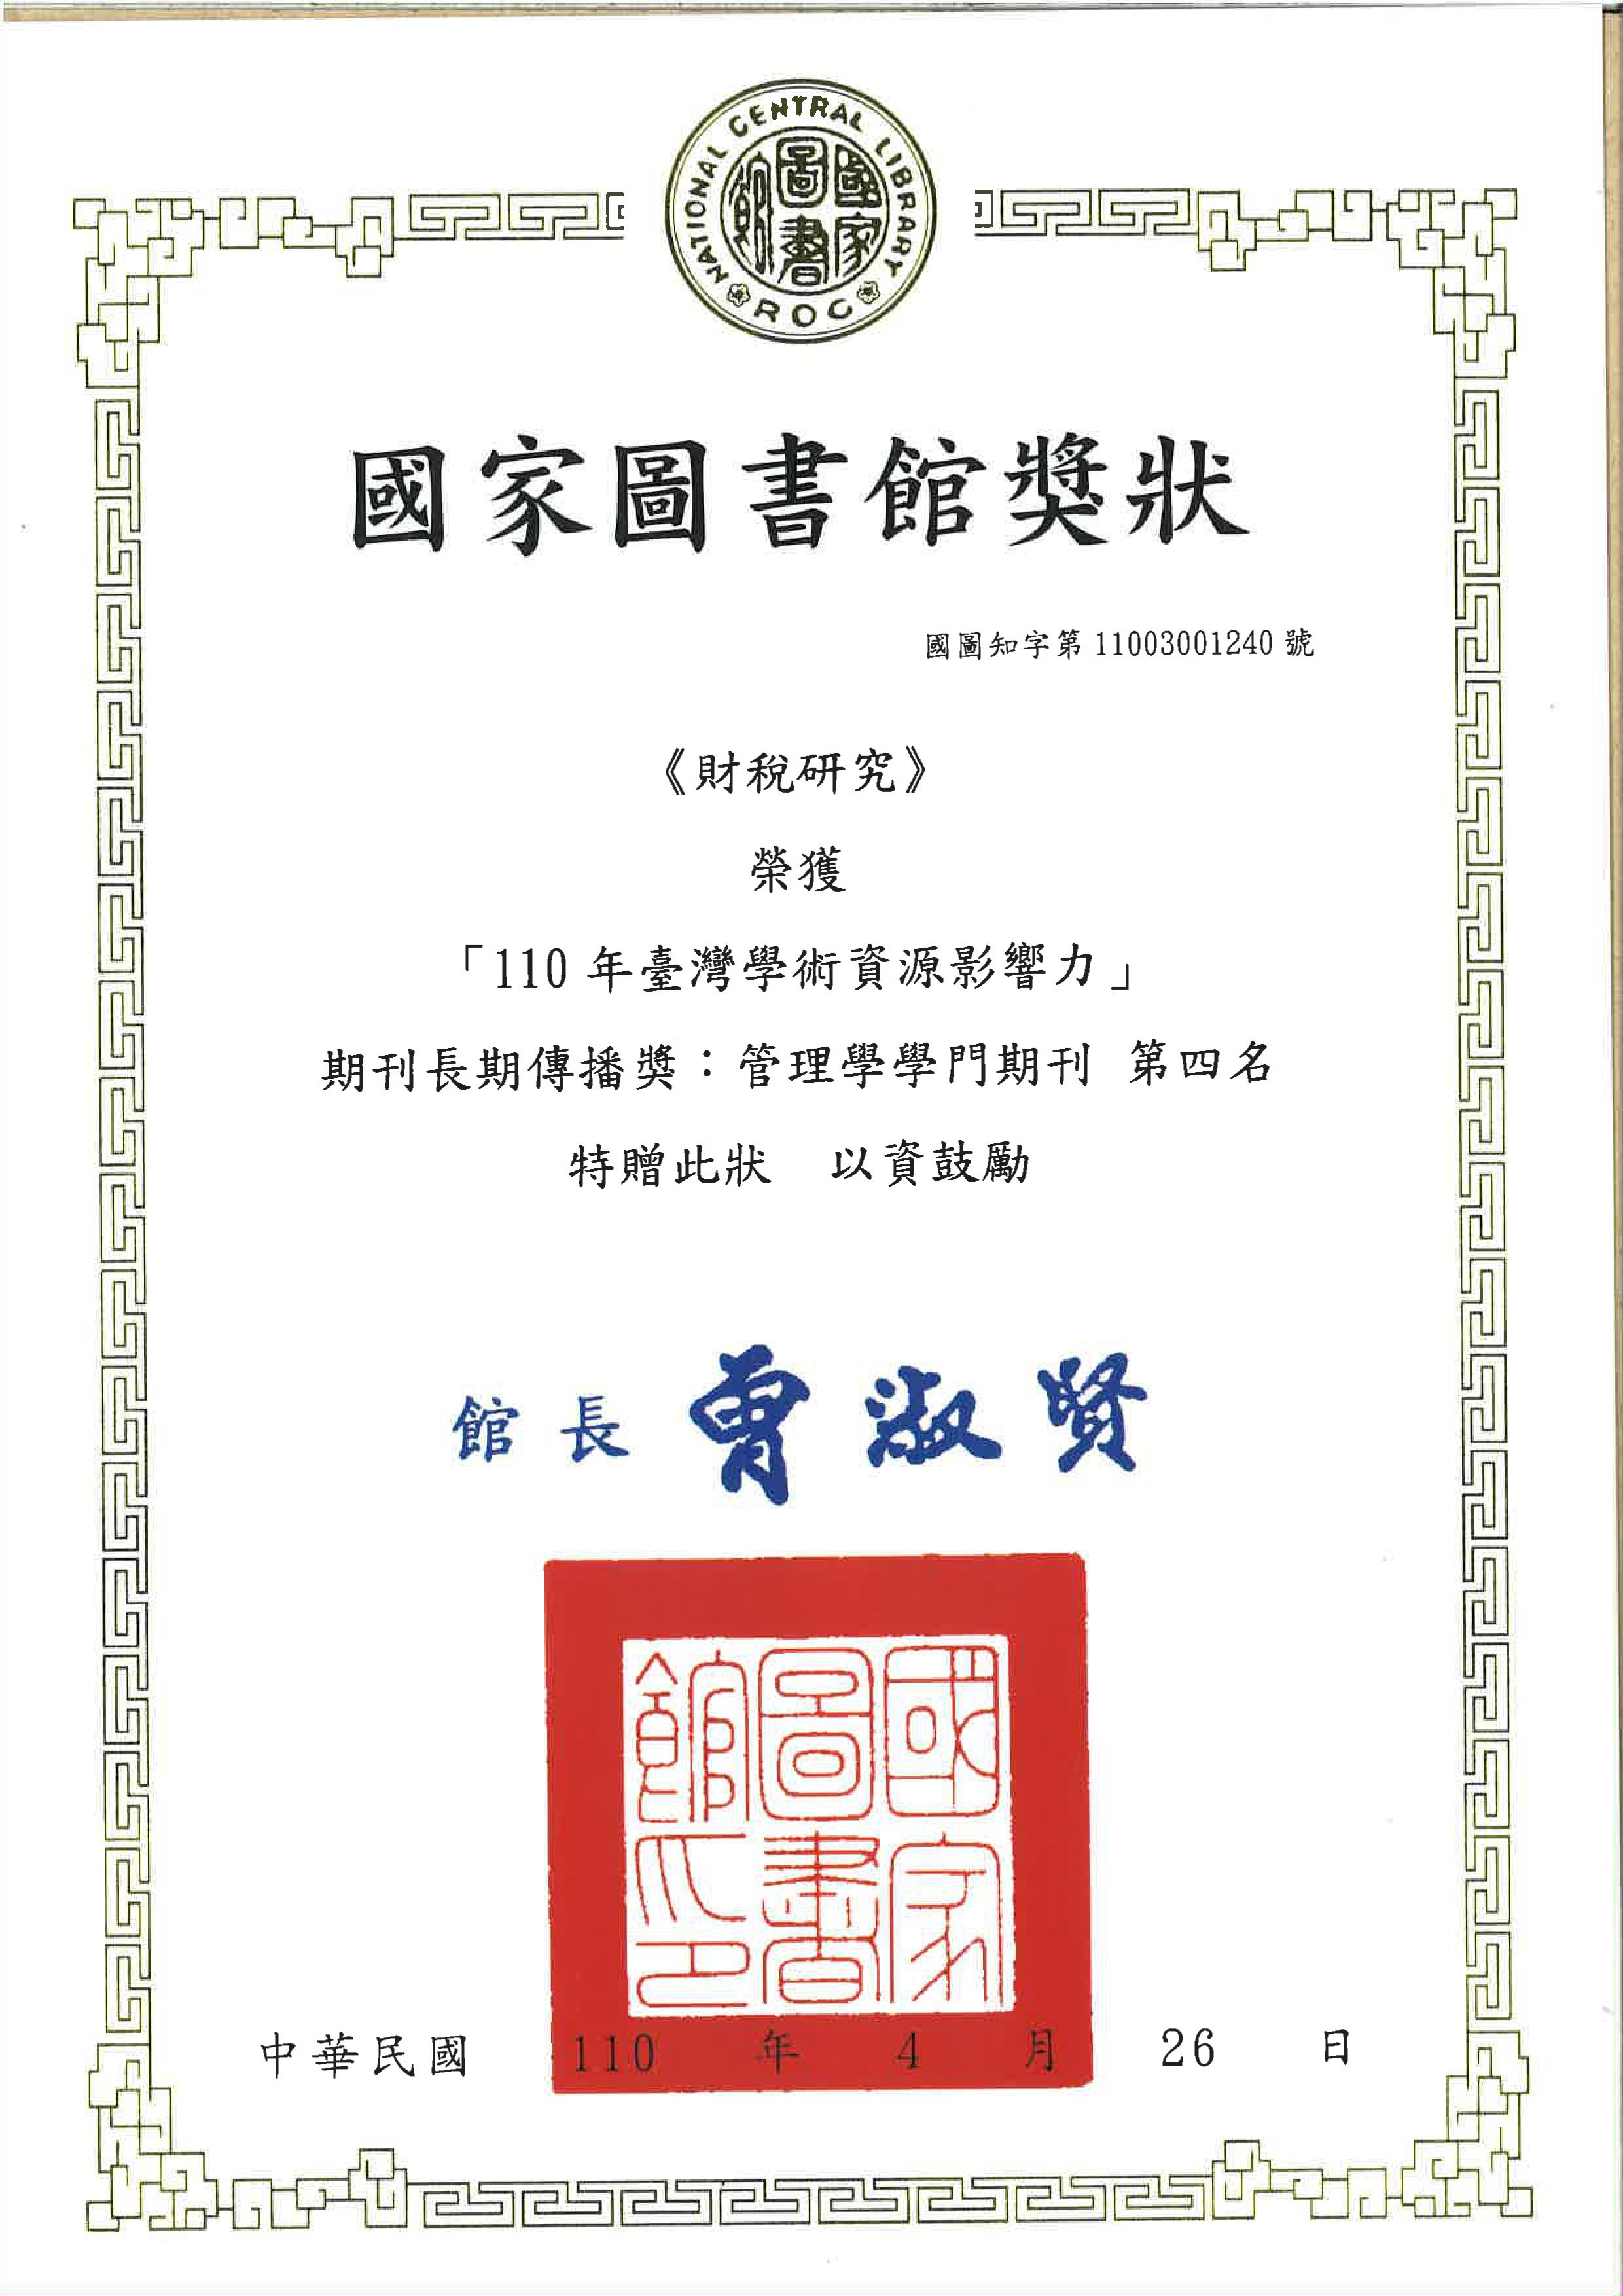 本部發行「財稅研究」獲頒國家圖書館110年及111年「臺灣學術資源影響力」期刊長期傳播獎